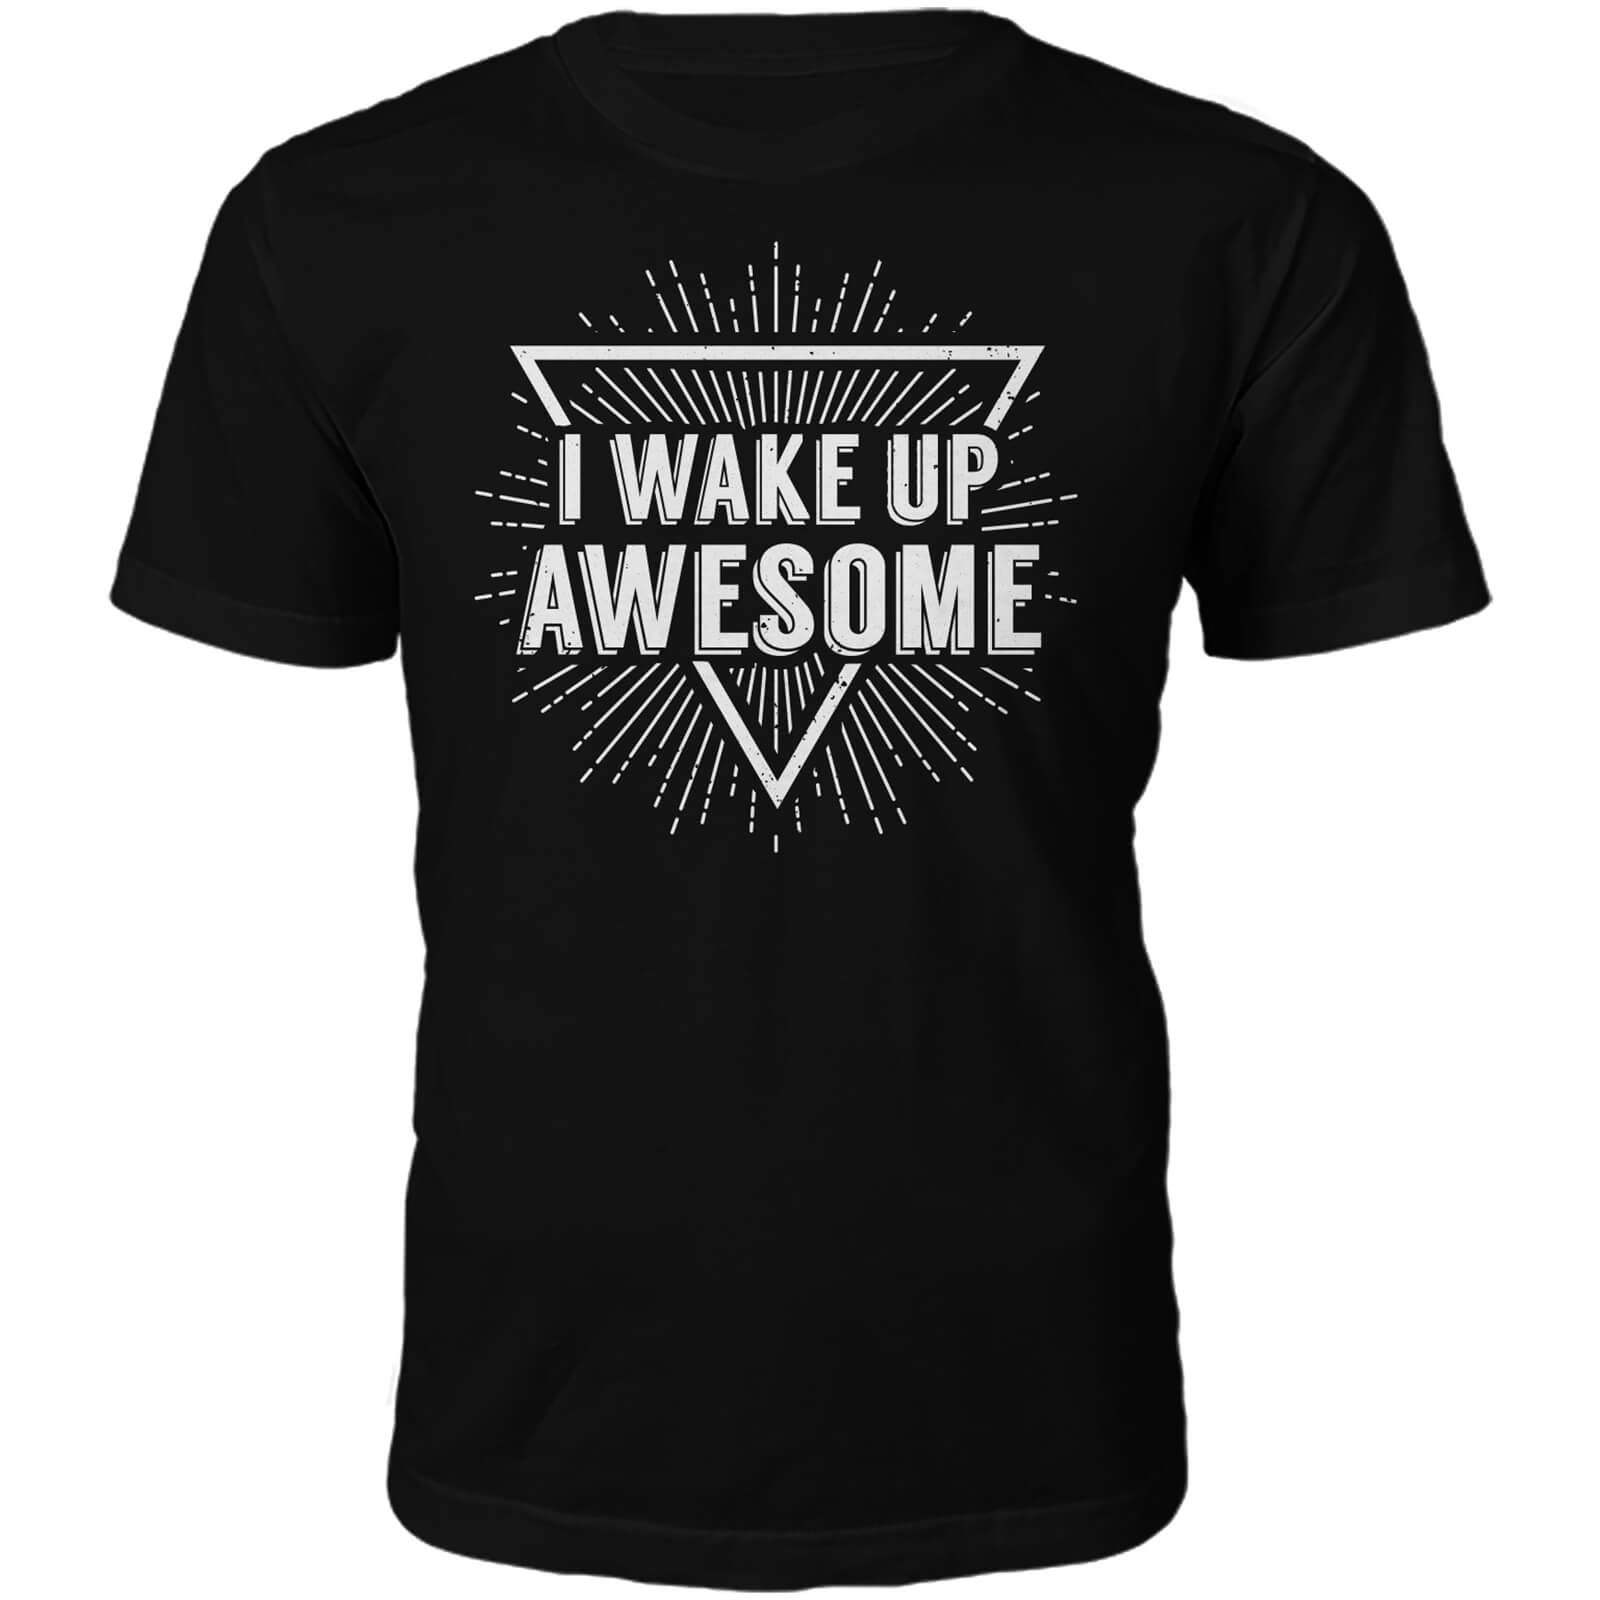 I Wake Up Awesome Slogan T-Shirt - Black - S - Black